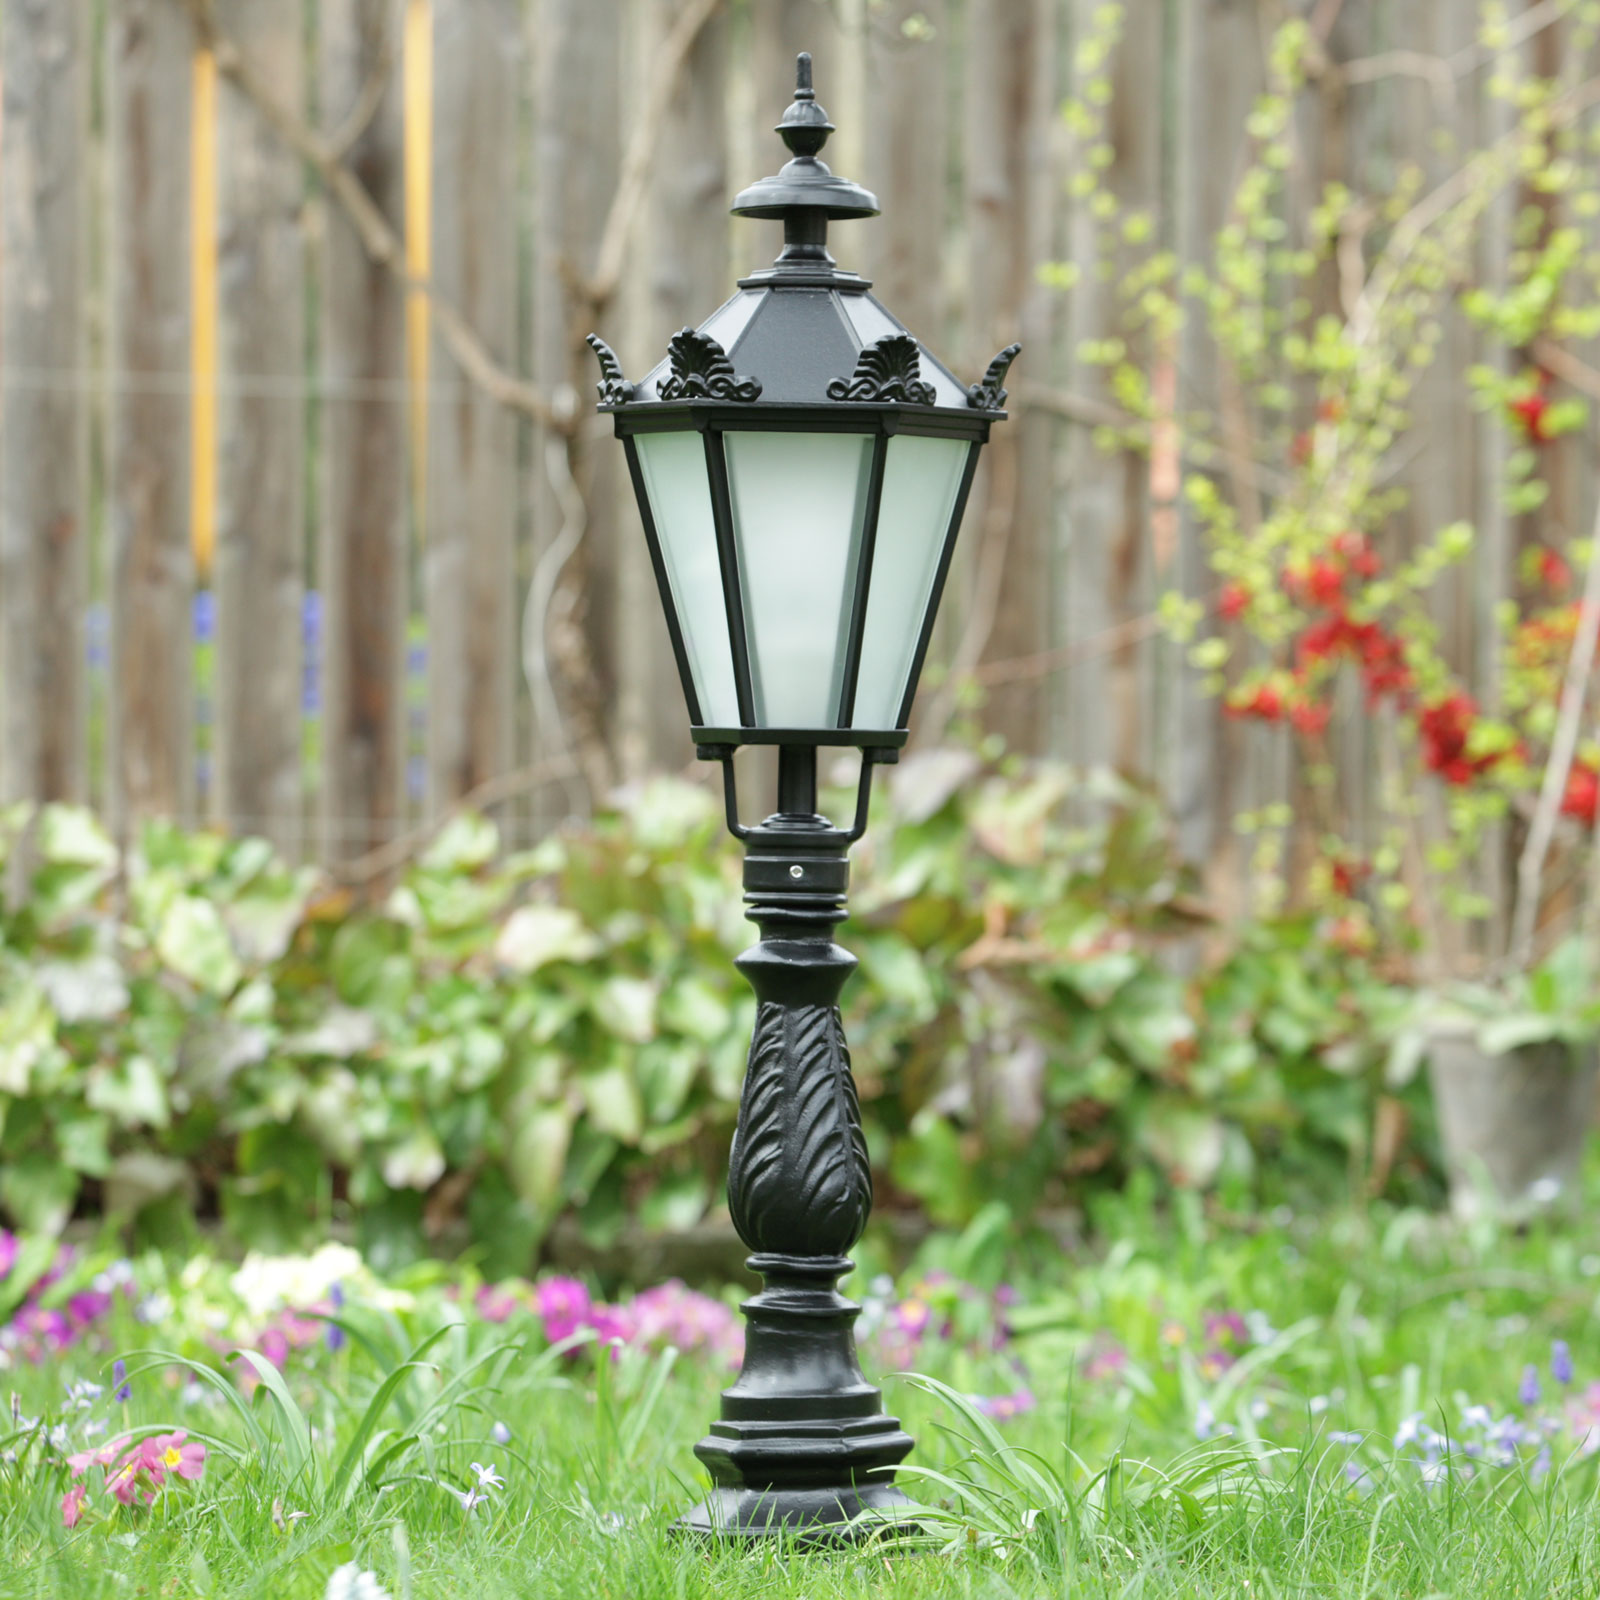 Die-Cast Garden Light with Lantern in Schinkel Style CYPR 71